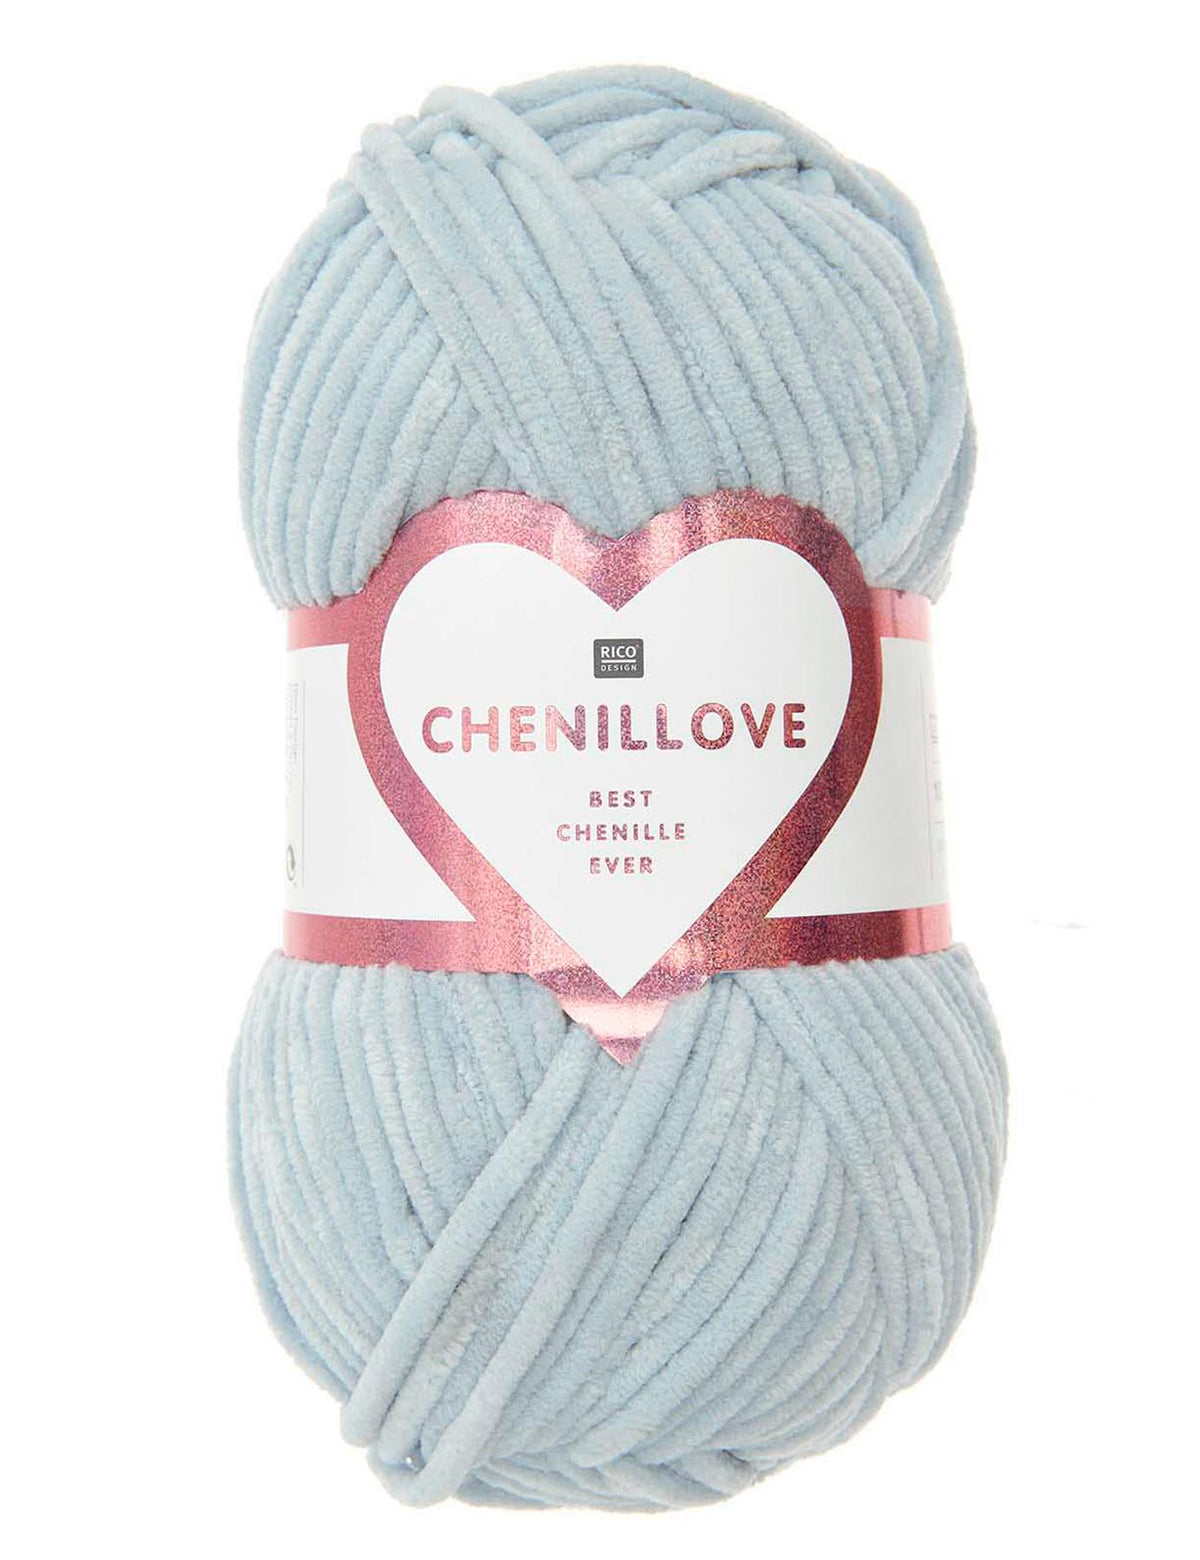 RICO Chenillove Light Blue (010) chenille yarn - 100g